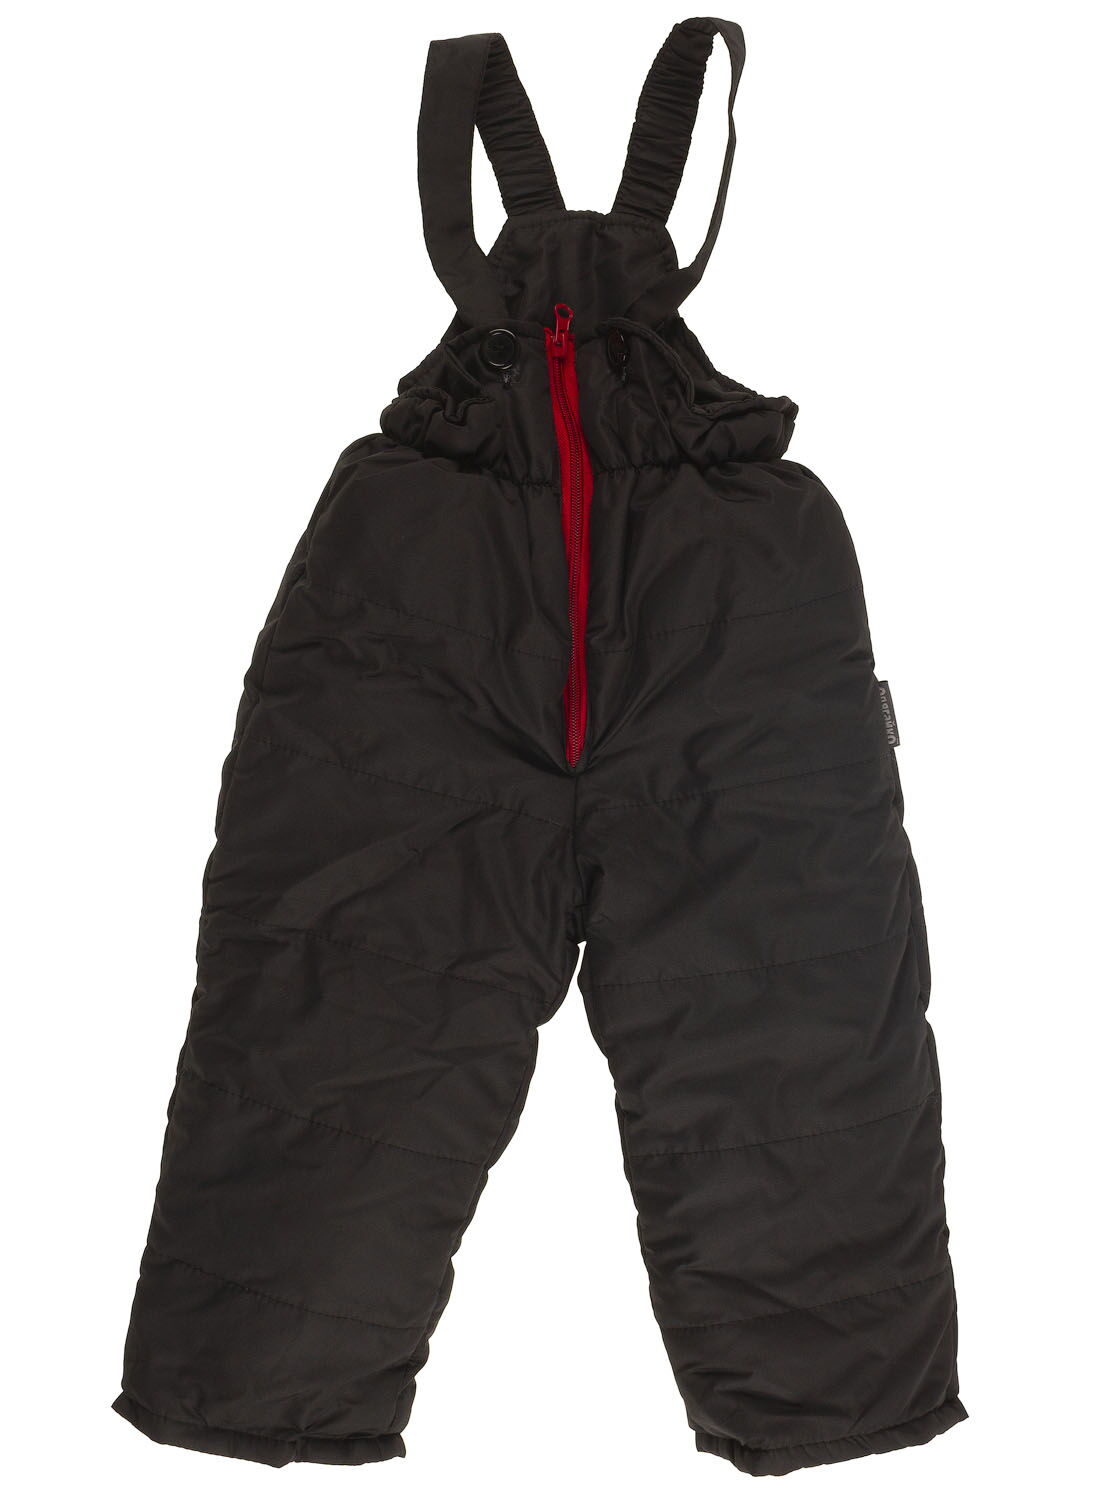 Комбинезон раздельный зимний (куртка+штаны) Одягайко красный 20153/32036 - фотография